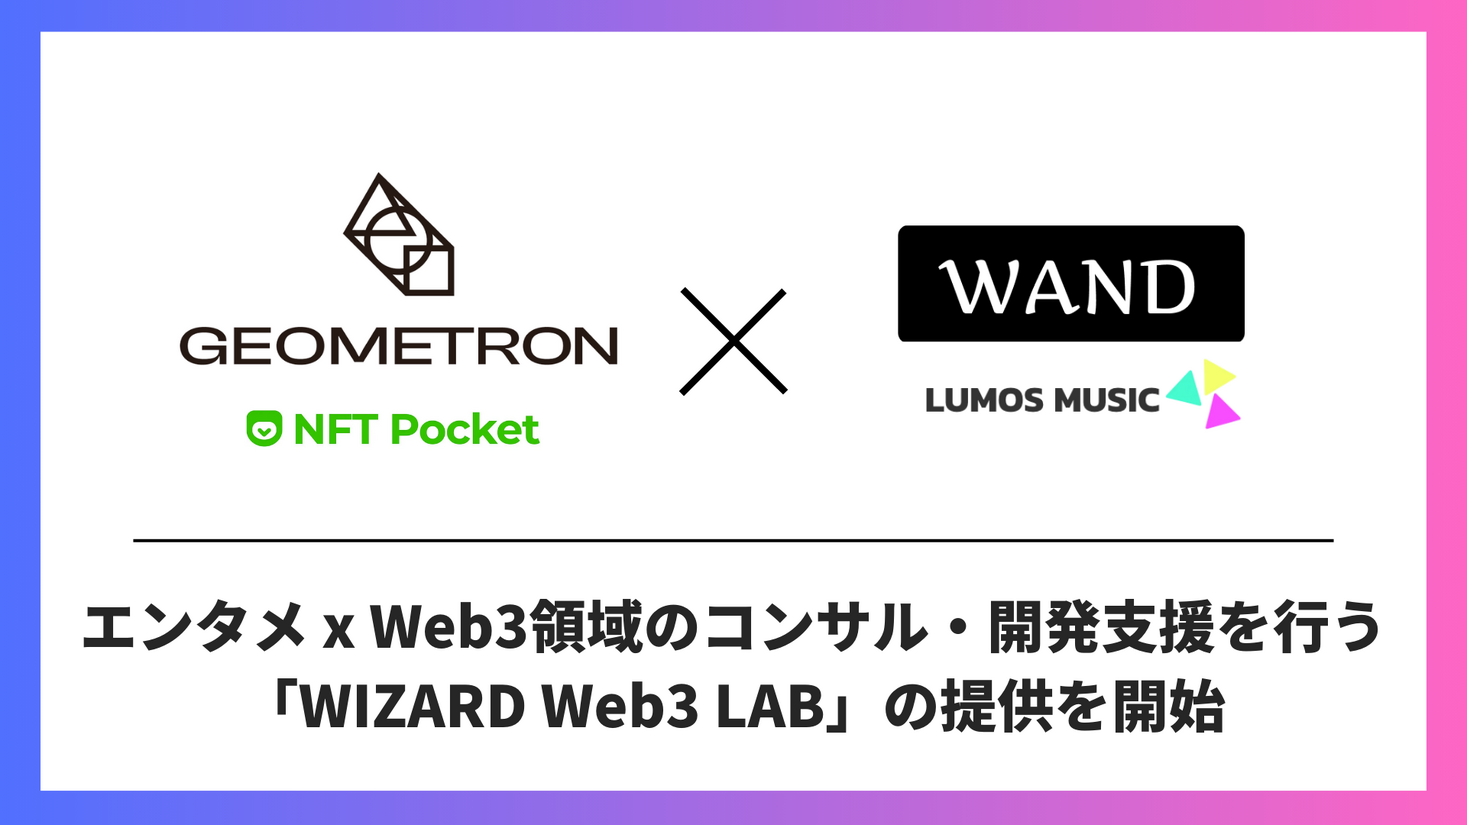 【エンタメ×Web3】東大発エンタメテックスタートアップのWAND、Web3開発のGEOMETRON社と『WIZARD Web3 LAB』を共同設立、コンサルティング・開発支援を提供開始へ